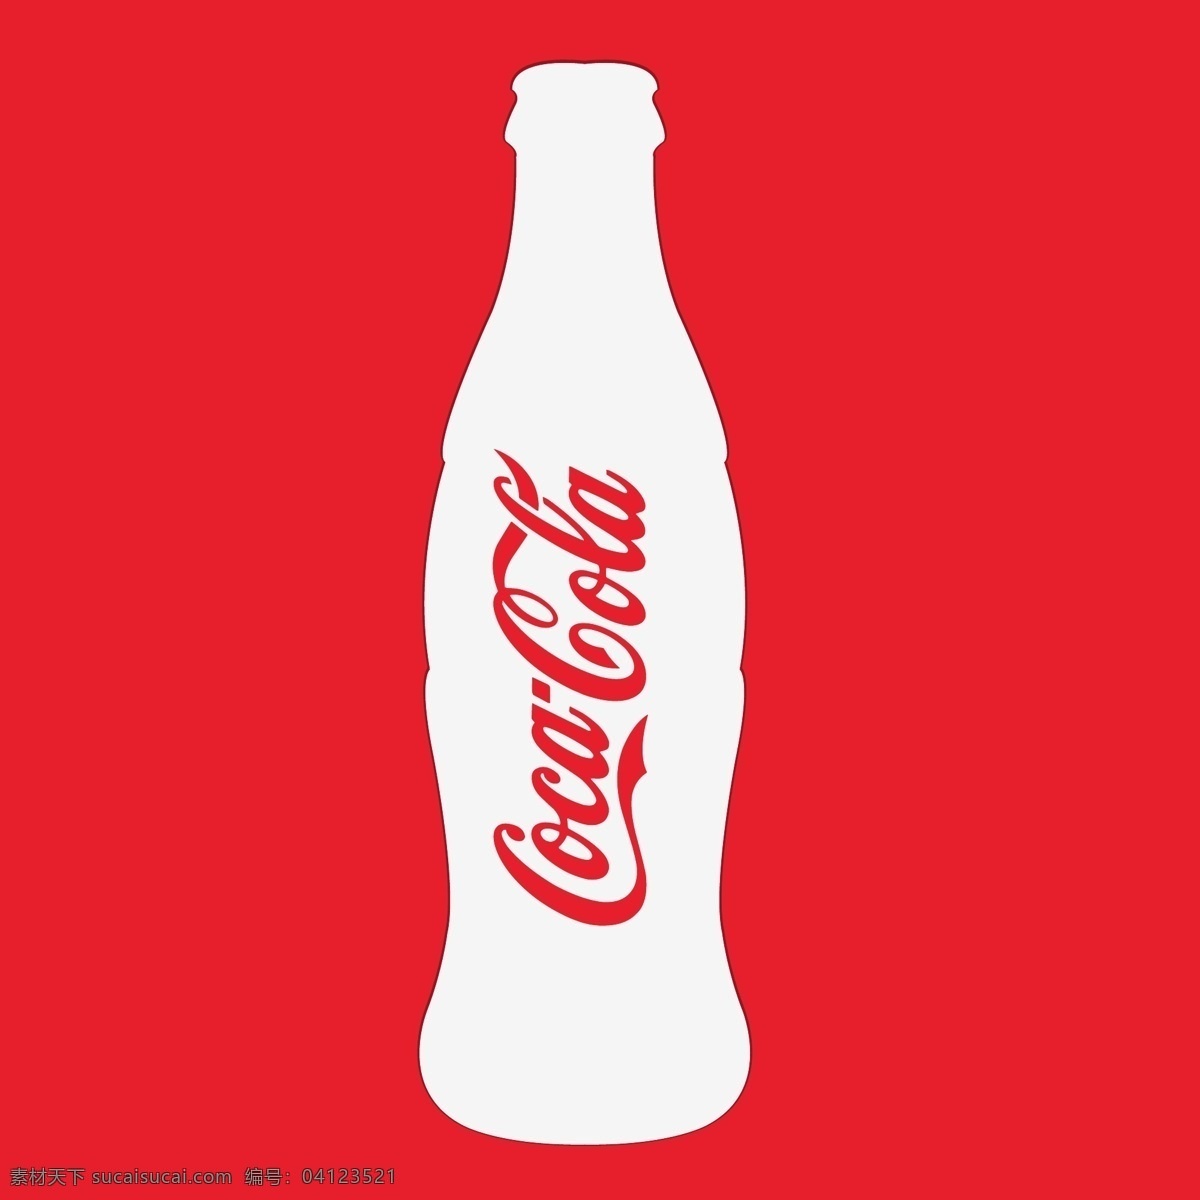 可口可乐瓶子 可口可乐瓶 饮品瓶 瓶子 玻璃瓶子 瓶子轮廓 日用品矢量 标志图标 其他图标